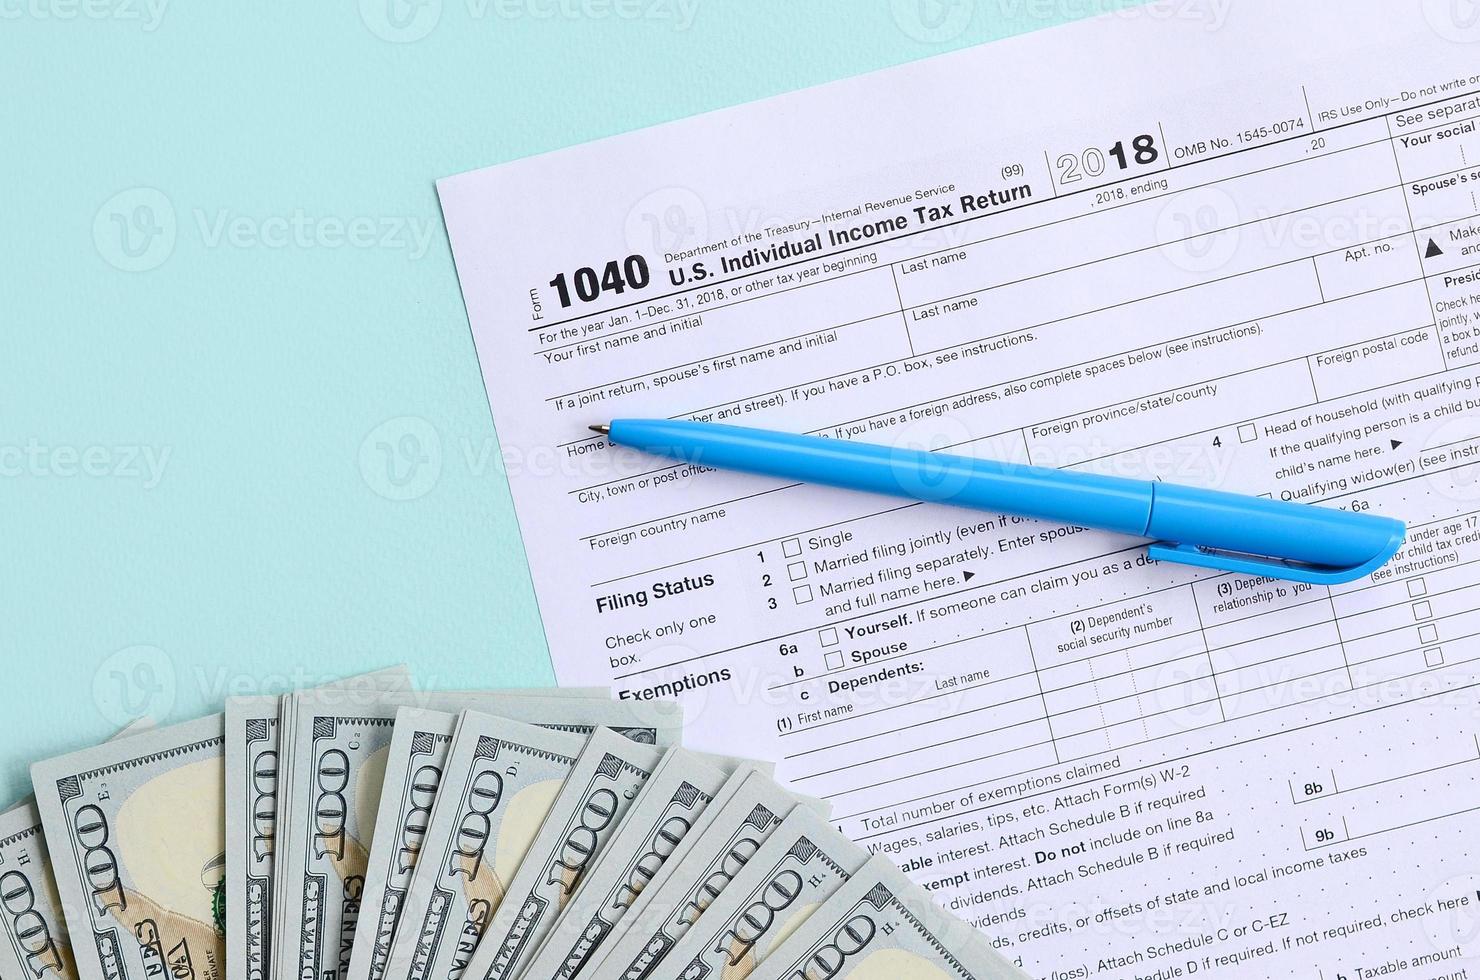 1040 Steuerformular liegt in der Nähe von Hundert-Dollar-Scheinen und blauem Stift auf hellblauem Hintergrund. uns individuelle Einkommensteuererklärung foto